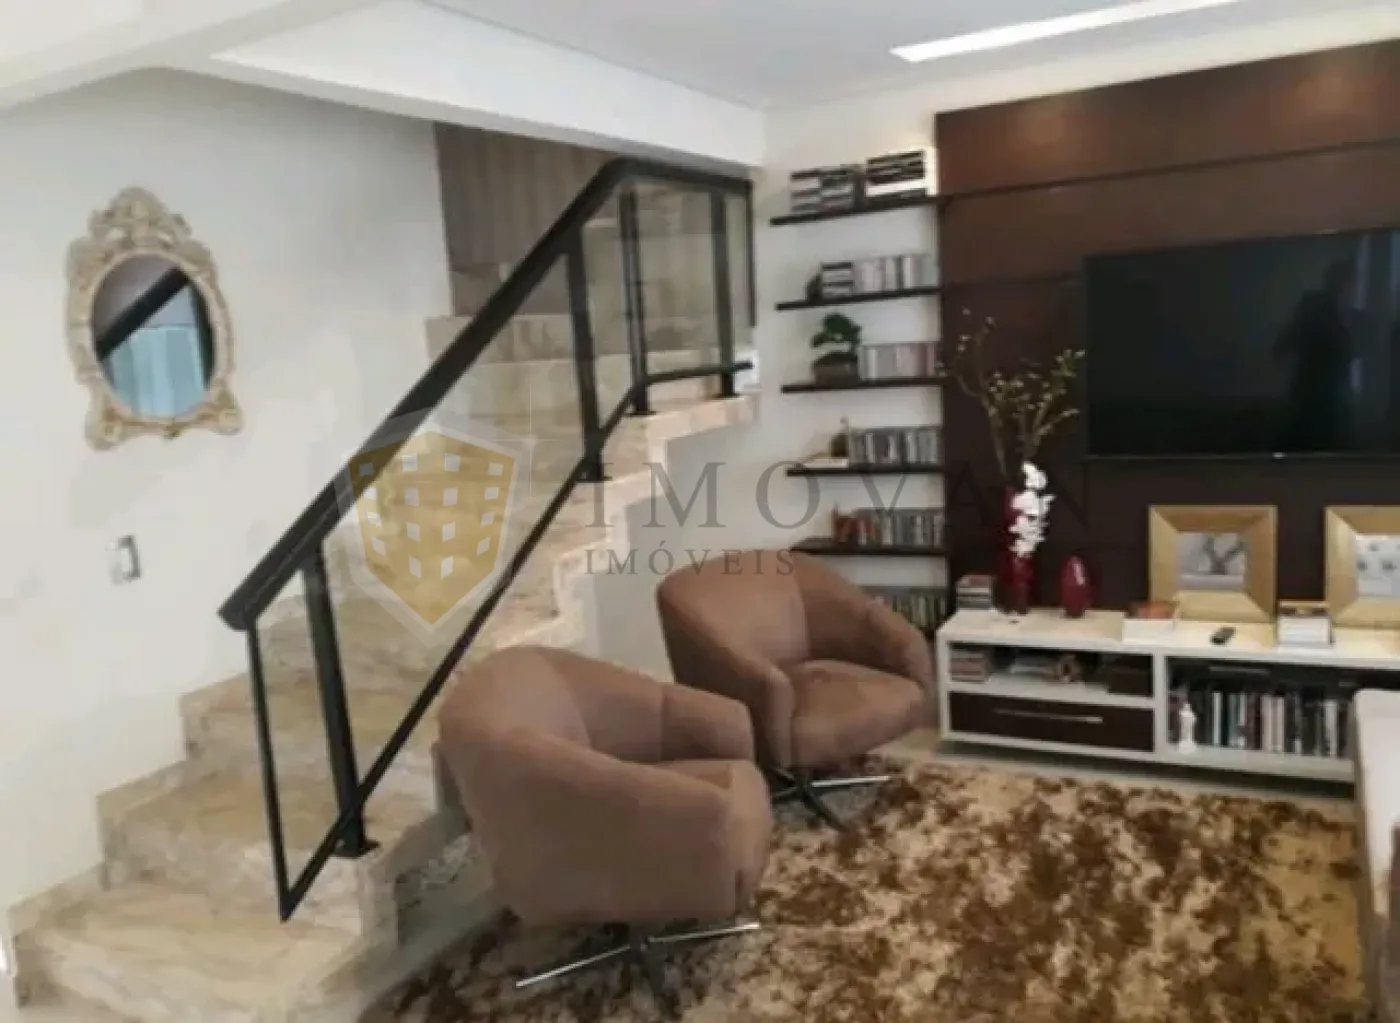 Comprar Apartamento / Padrão em Ribeirão Preto R$ 690.000,00 - Foto 5